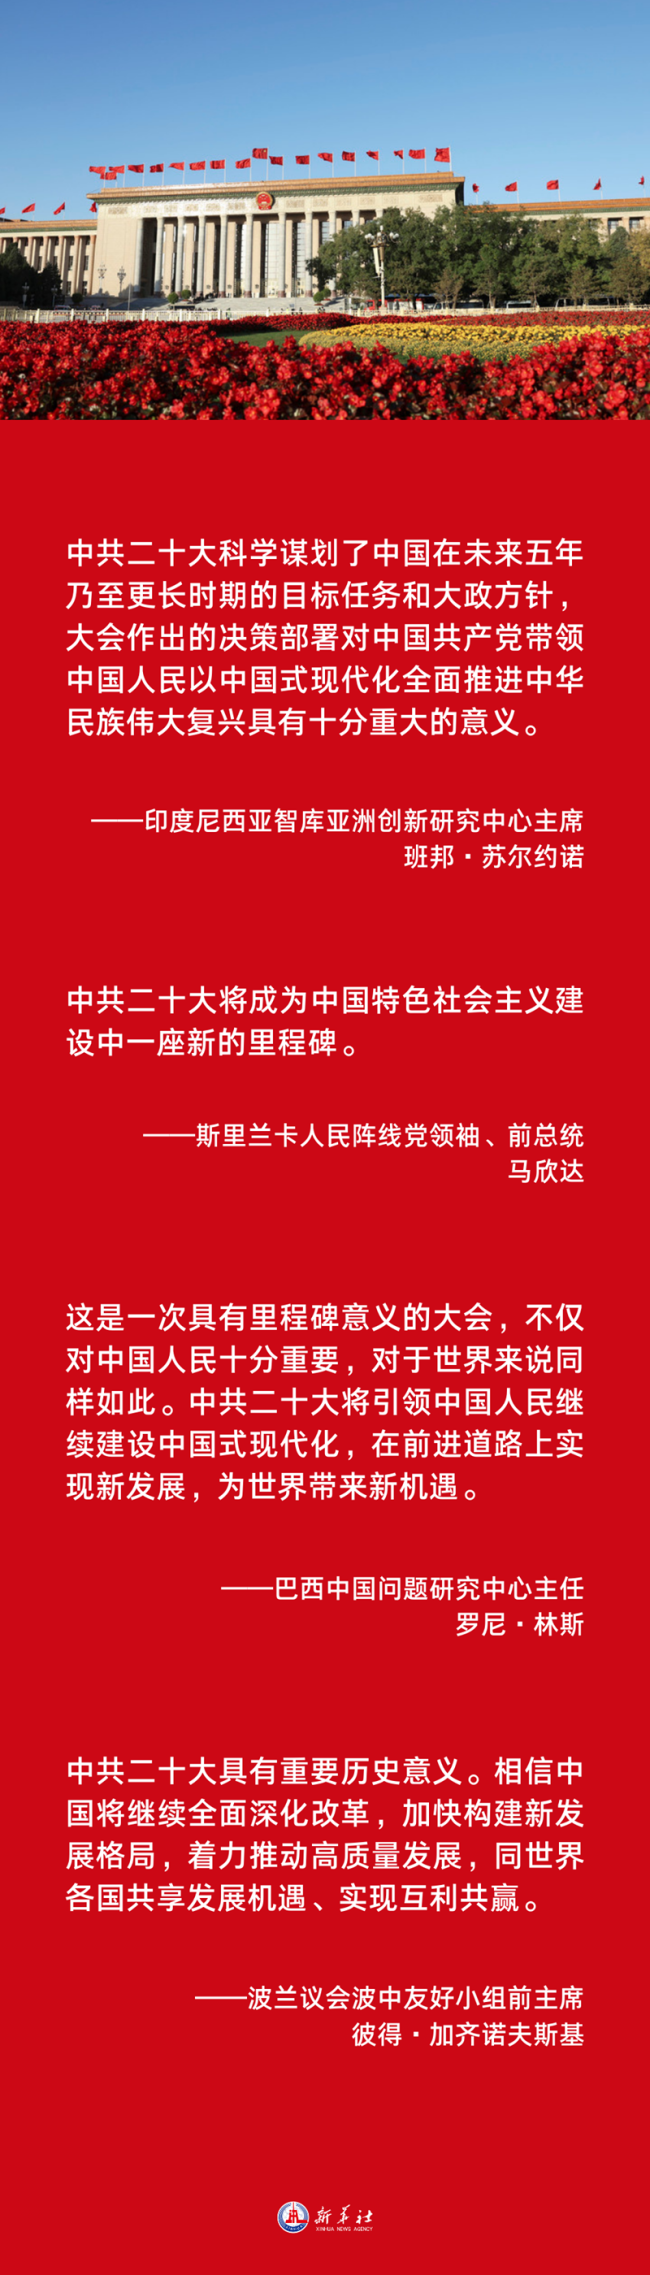 海报 | 中共二十大对中国和世界都具有里程碑意义